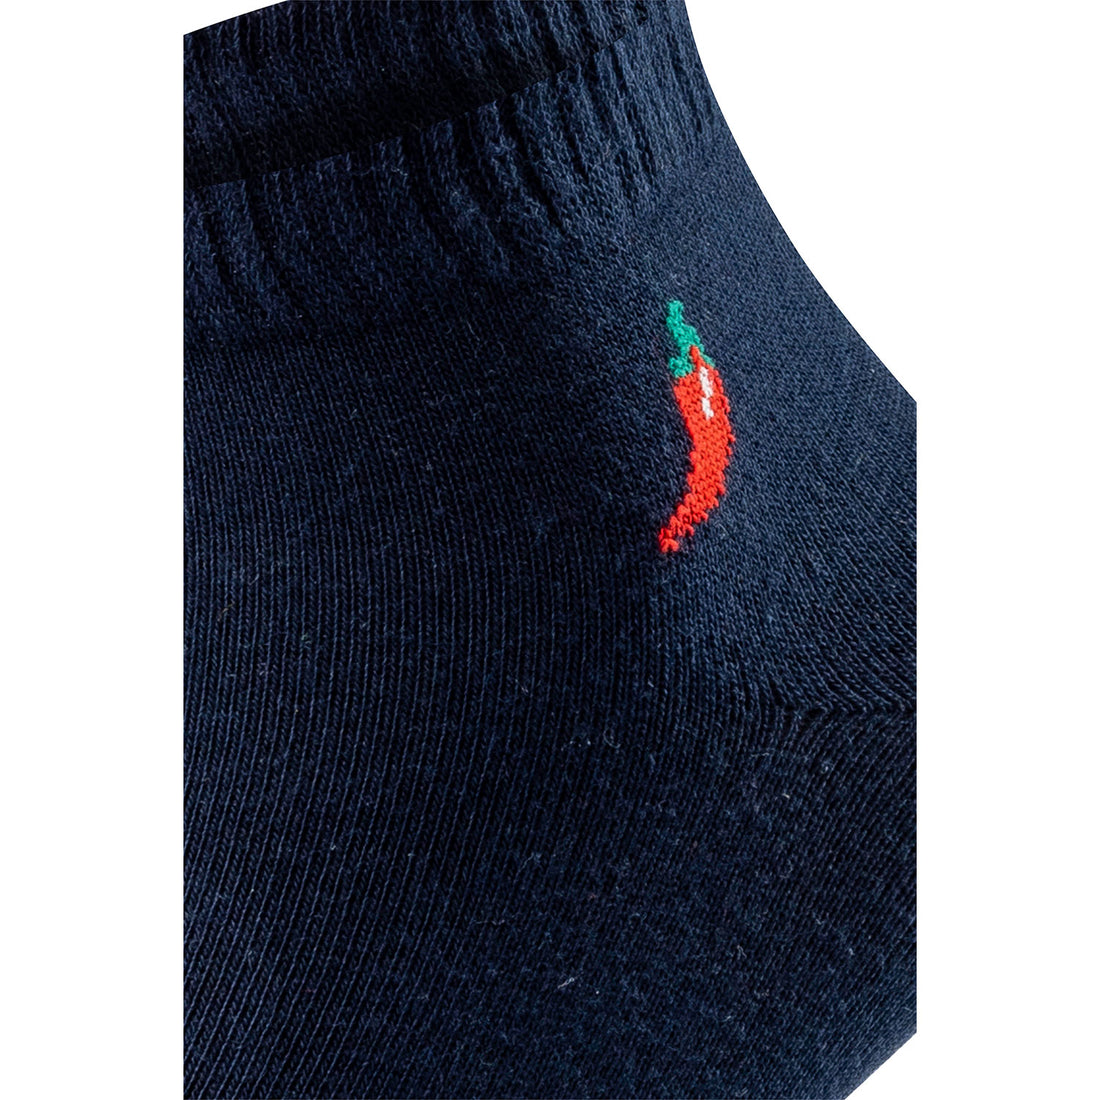 ChiliLifestyle Quarter Dark Socken, 12 Paar, für Damen und Herren